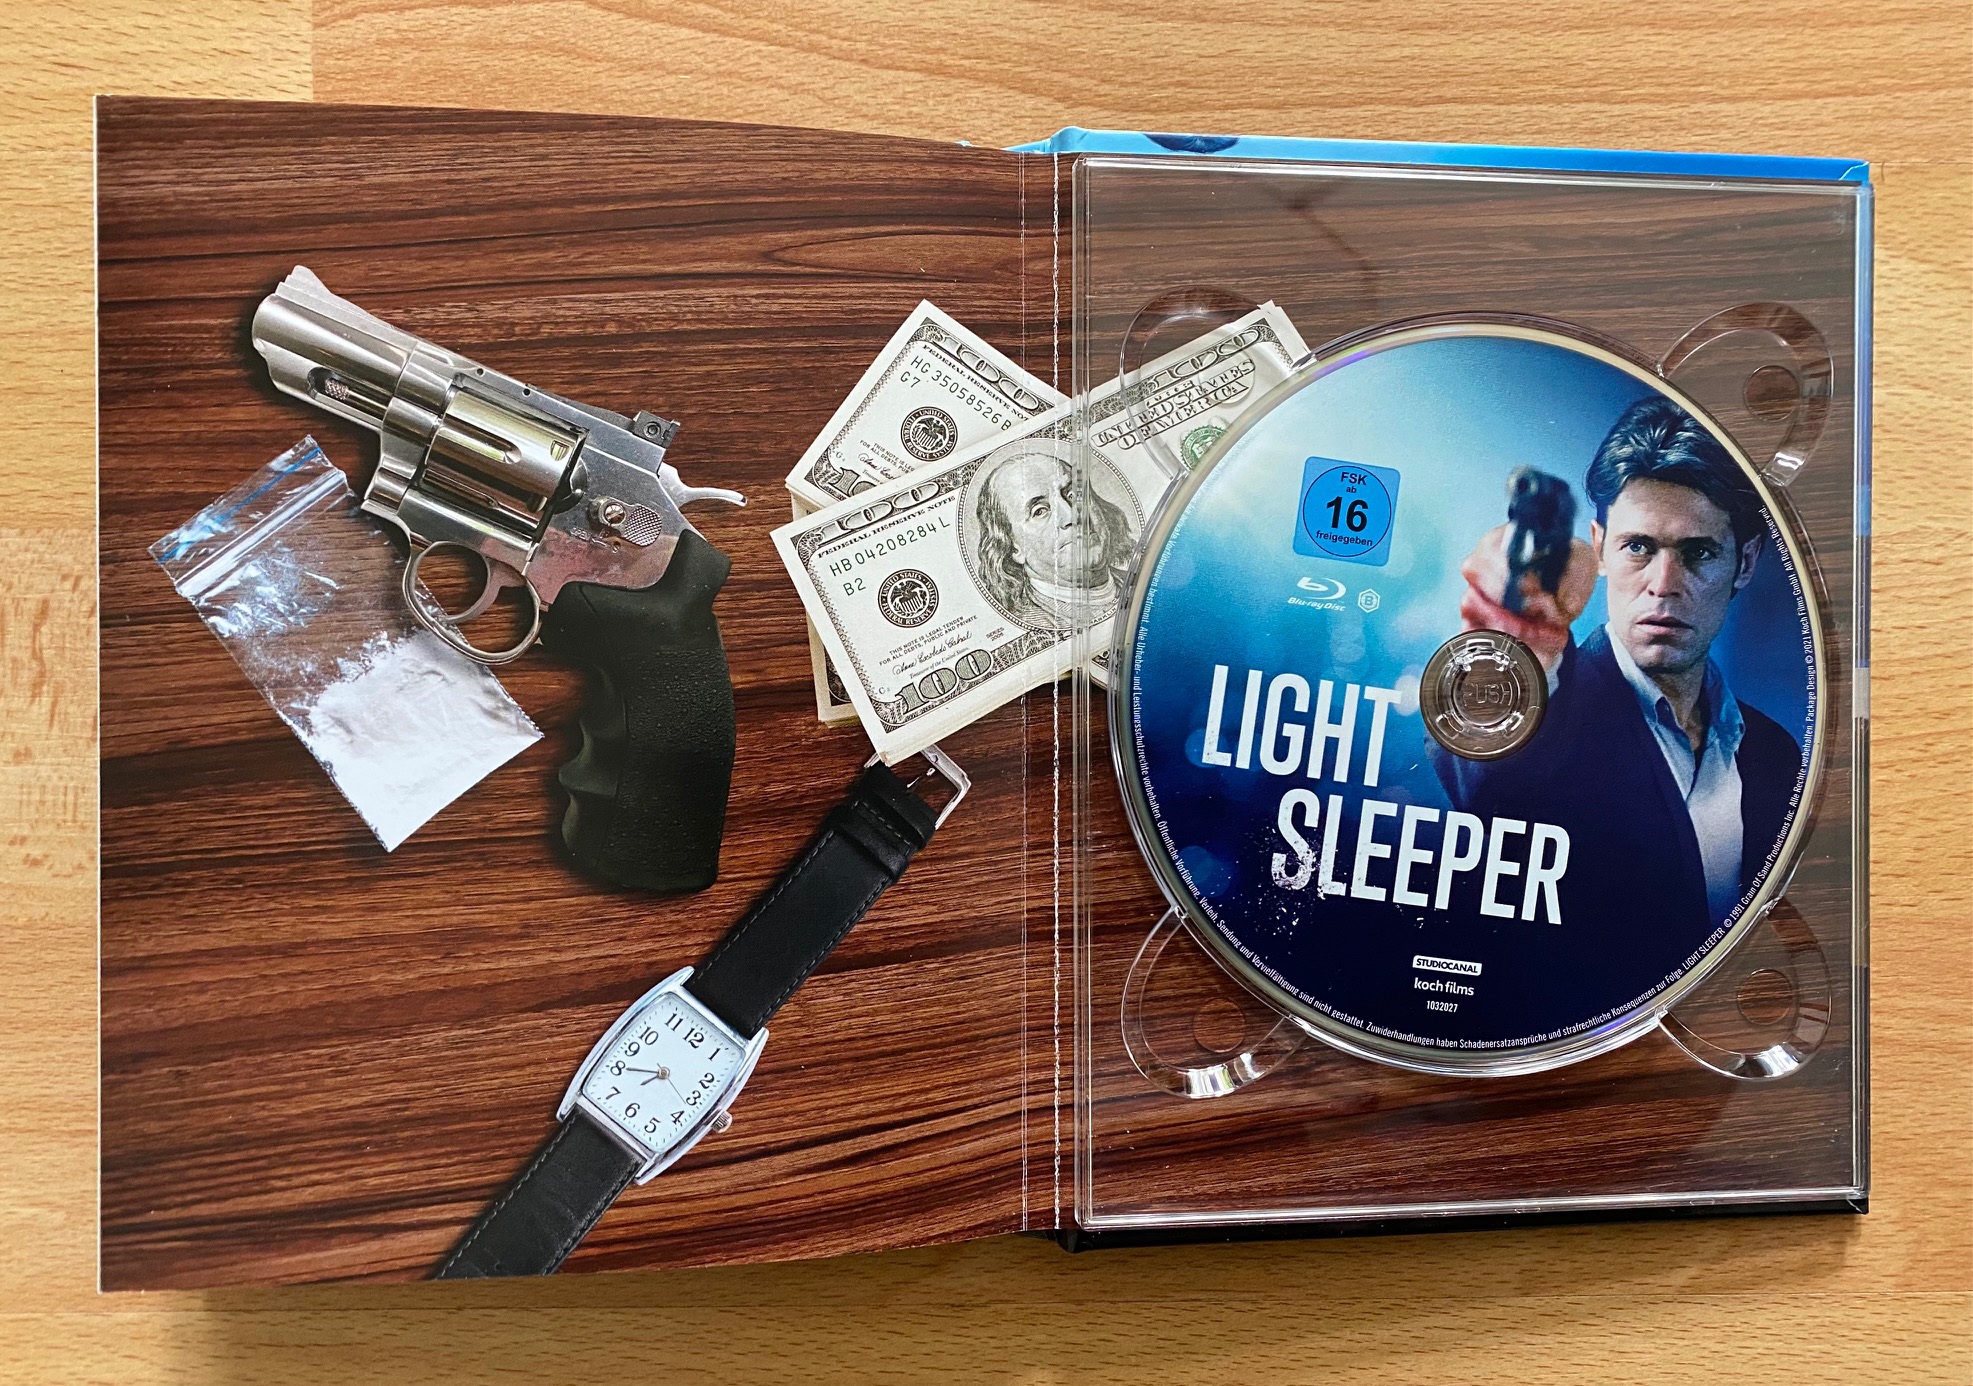 Light Sleeper DVD IMG_7218.jpg